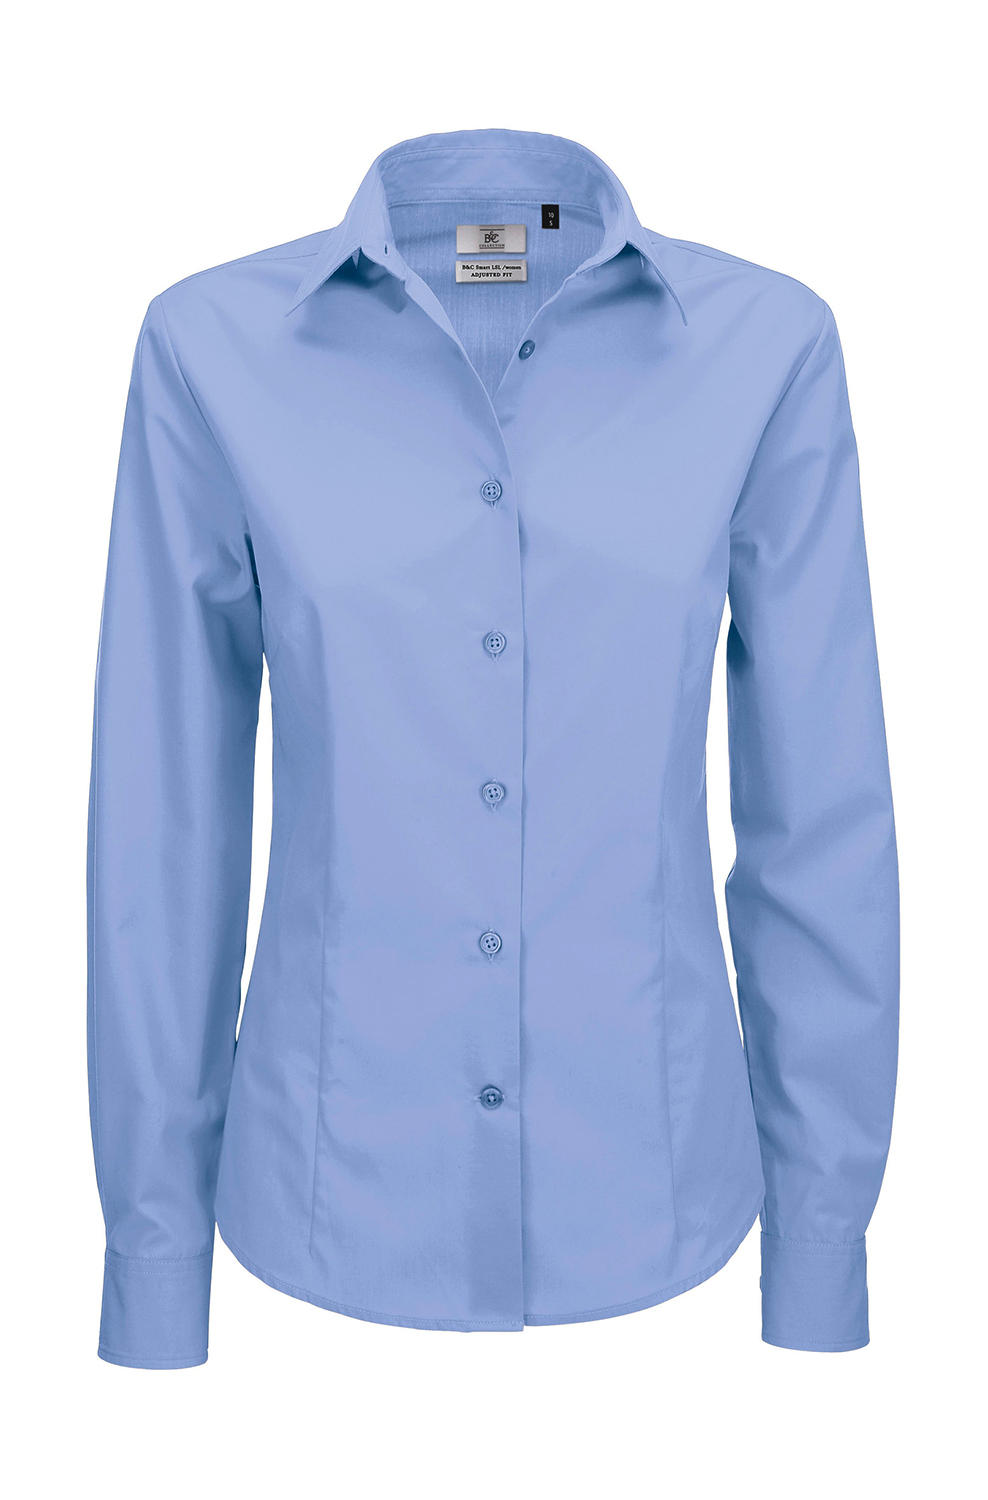  Smart LSL/women Poplin Shirt in Farbe Business Blue